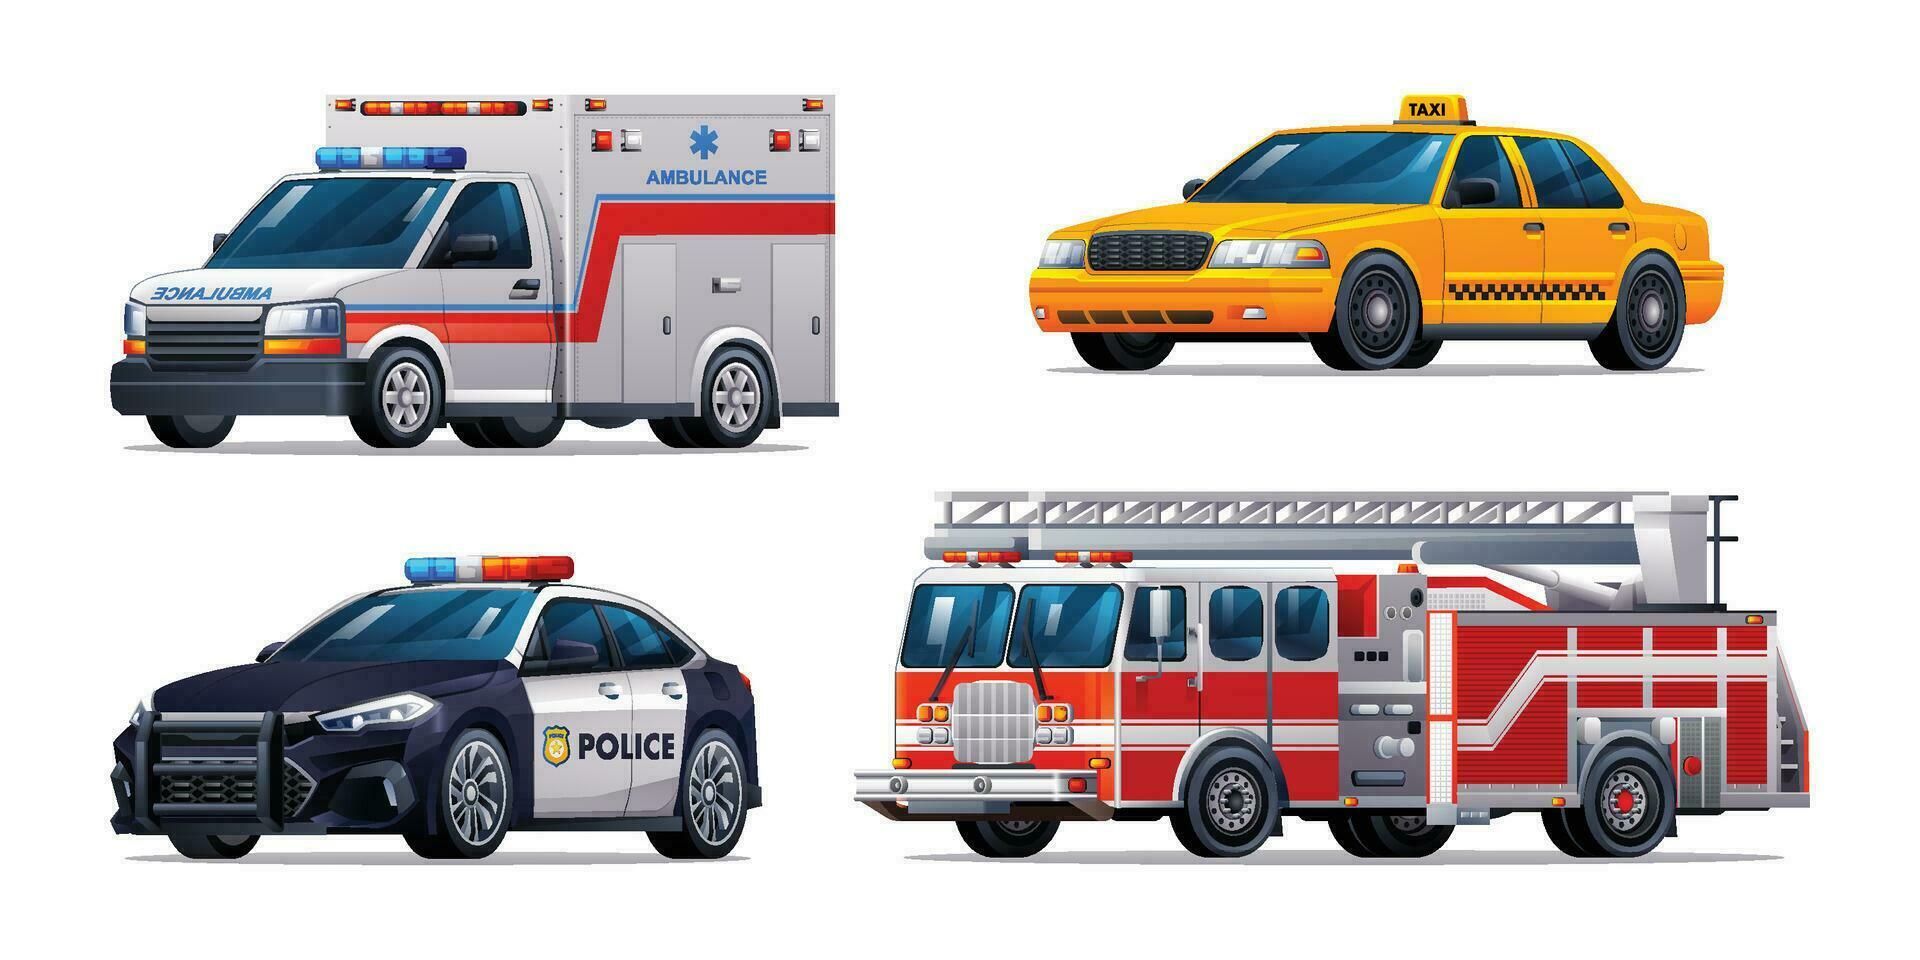 einstellen von Notfall Fahrzeuge. Krankenwagen, Taxi, Polizei Auto und Feuer LKW. offiziell Notfall Bedienung Fahrzeuge Vektor Illustration